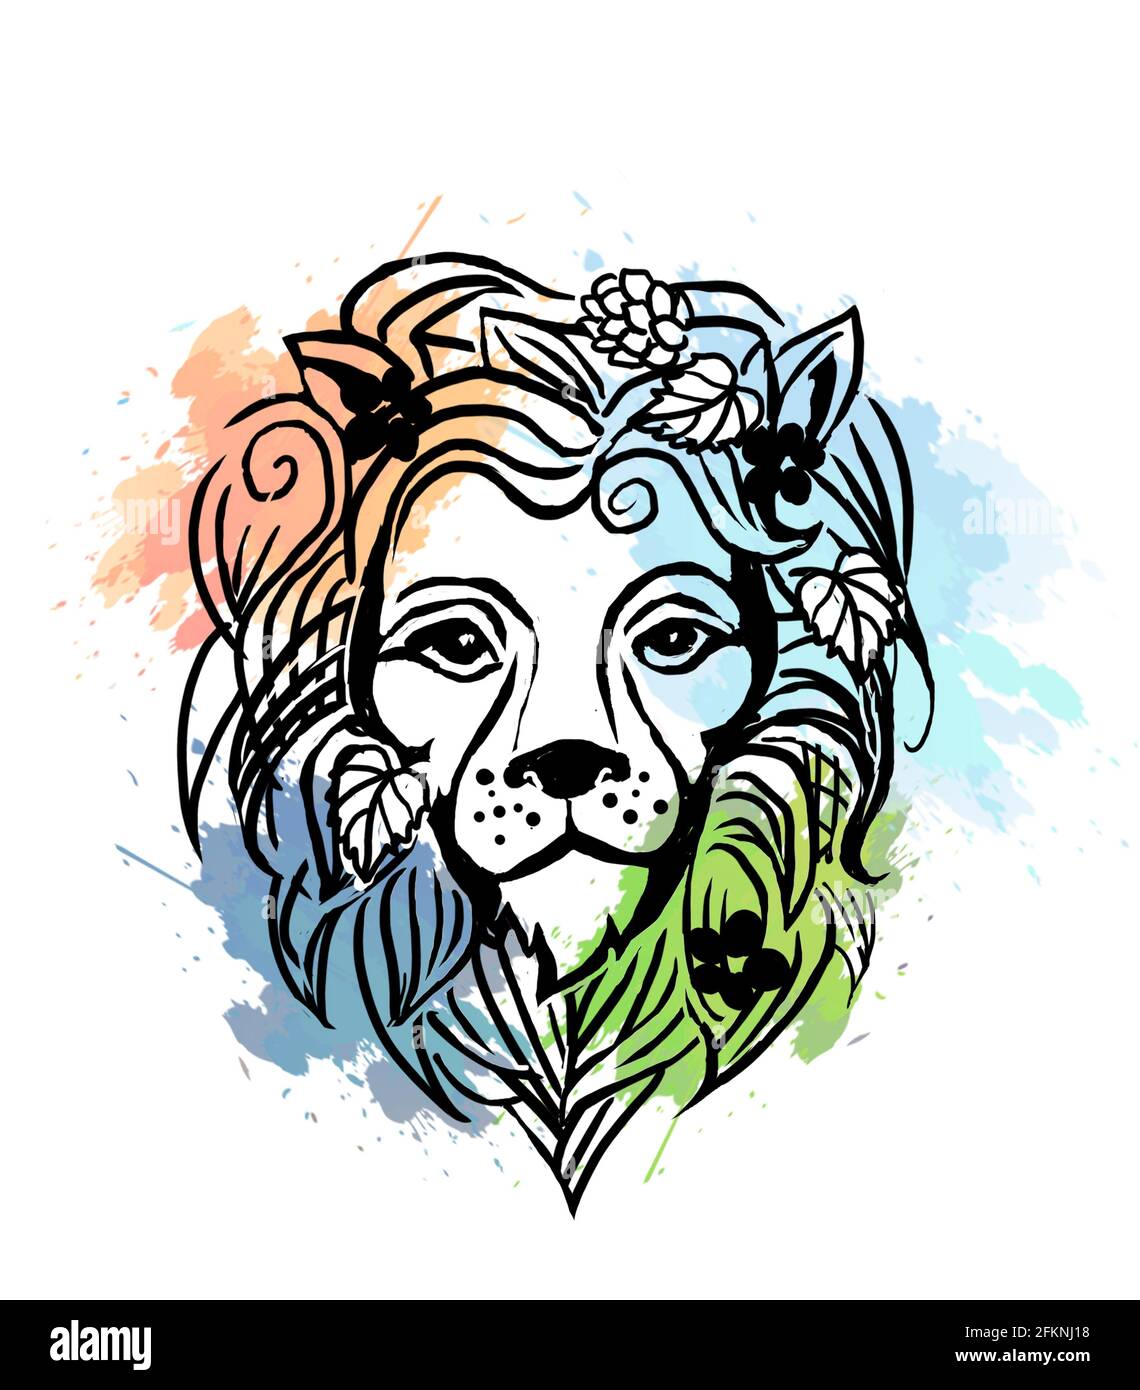 Logo grafico Lion con elementi floreali. Immagine raster isolata su sfondo bianco. Foto Stock